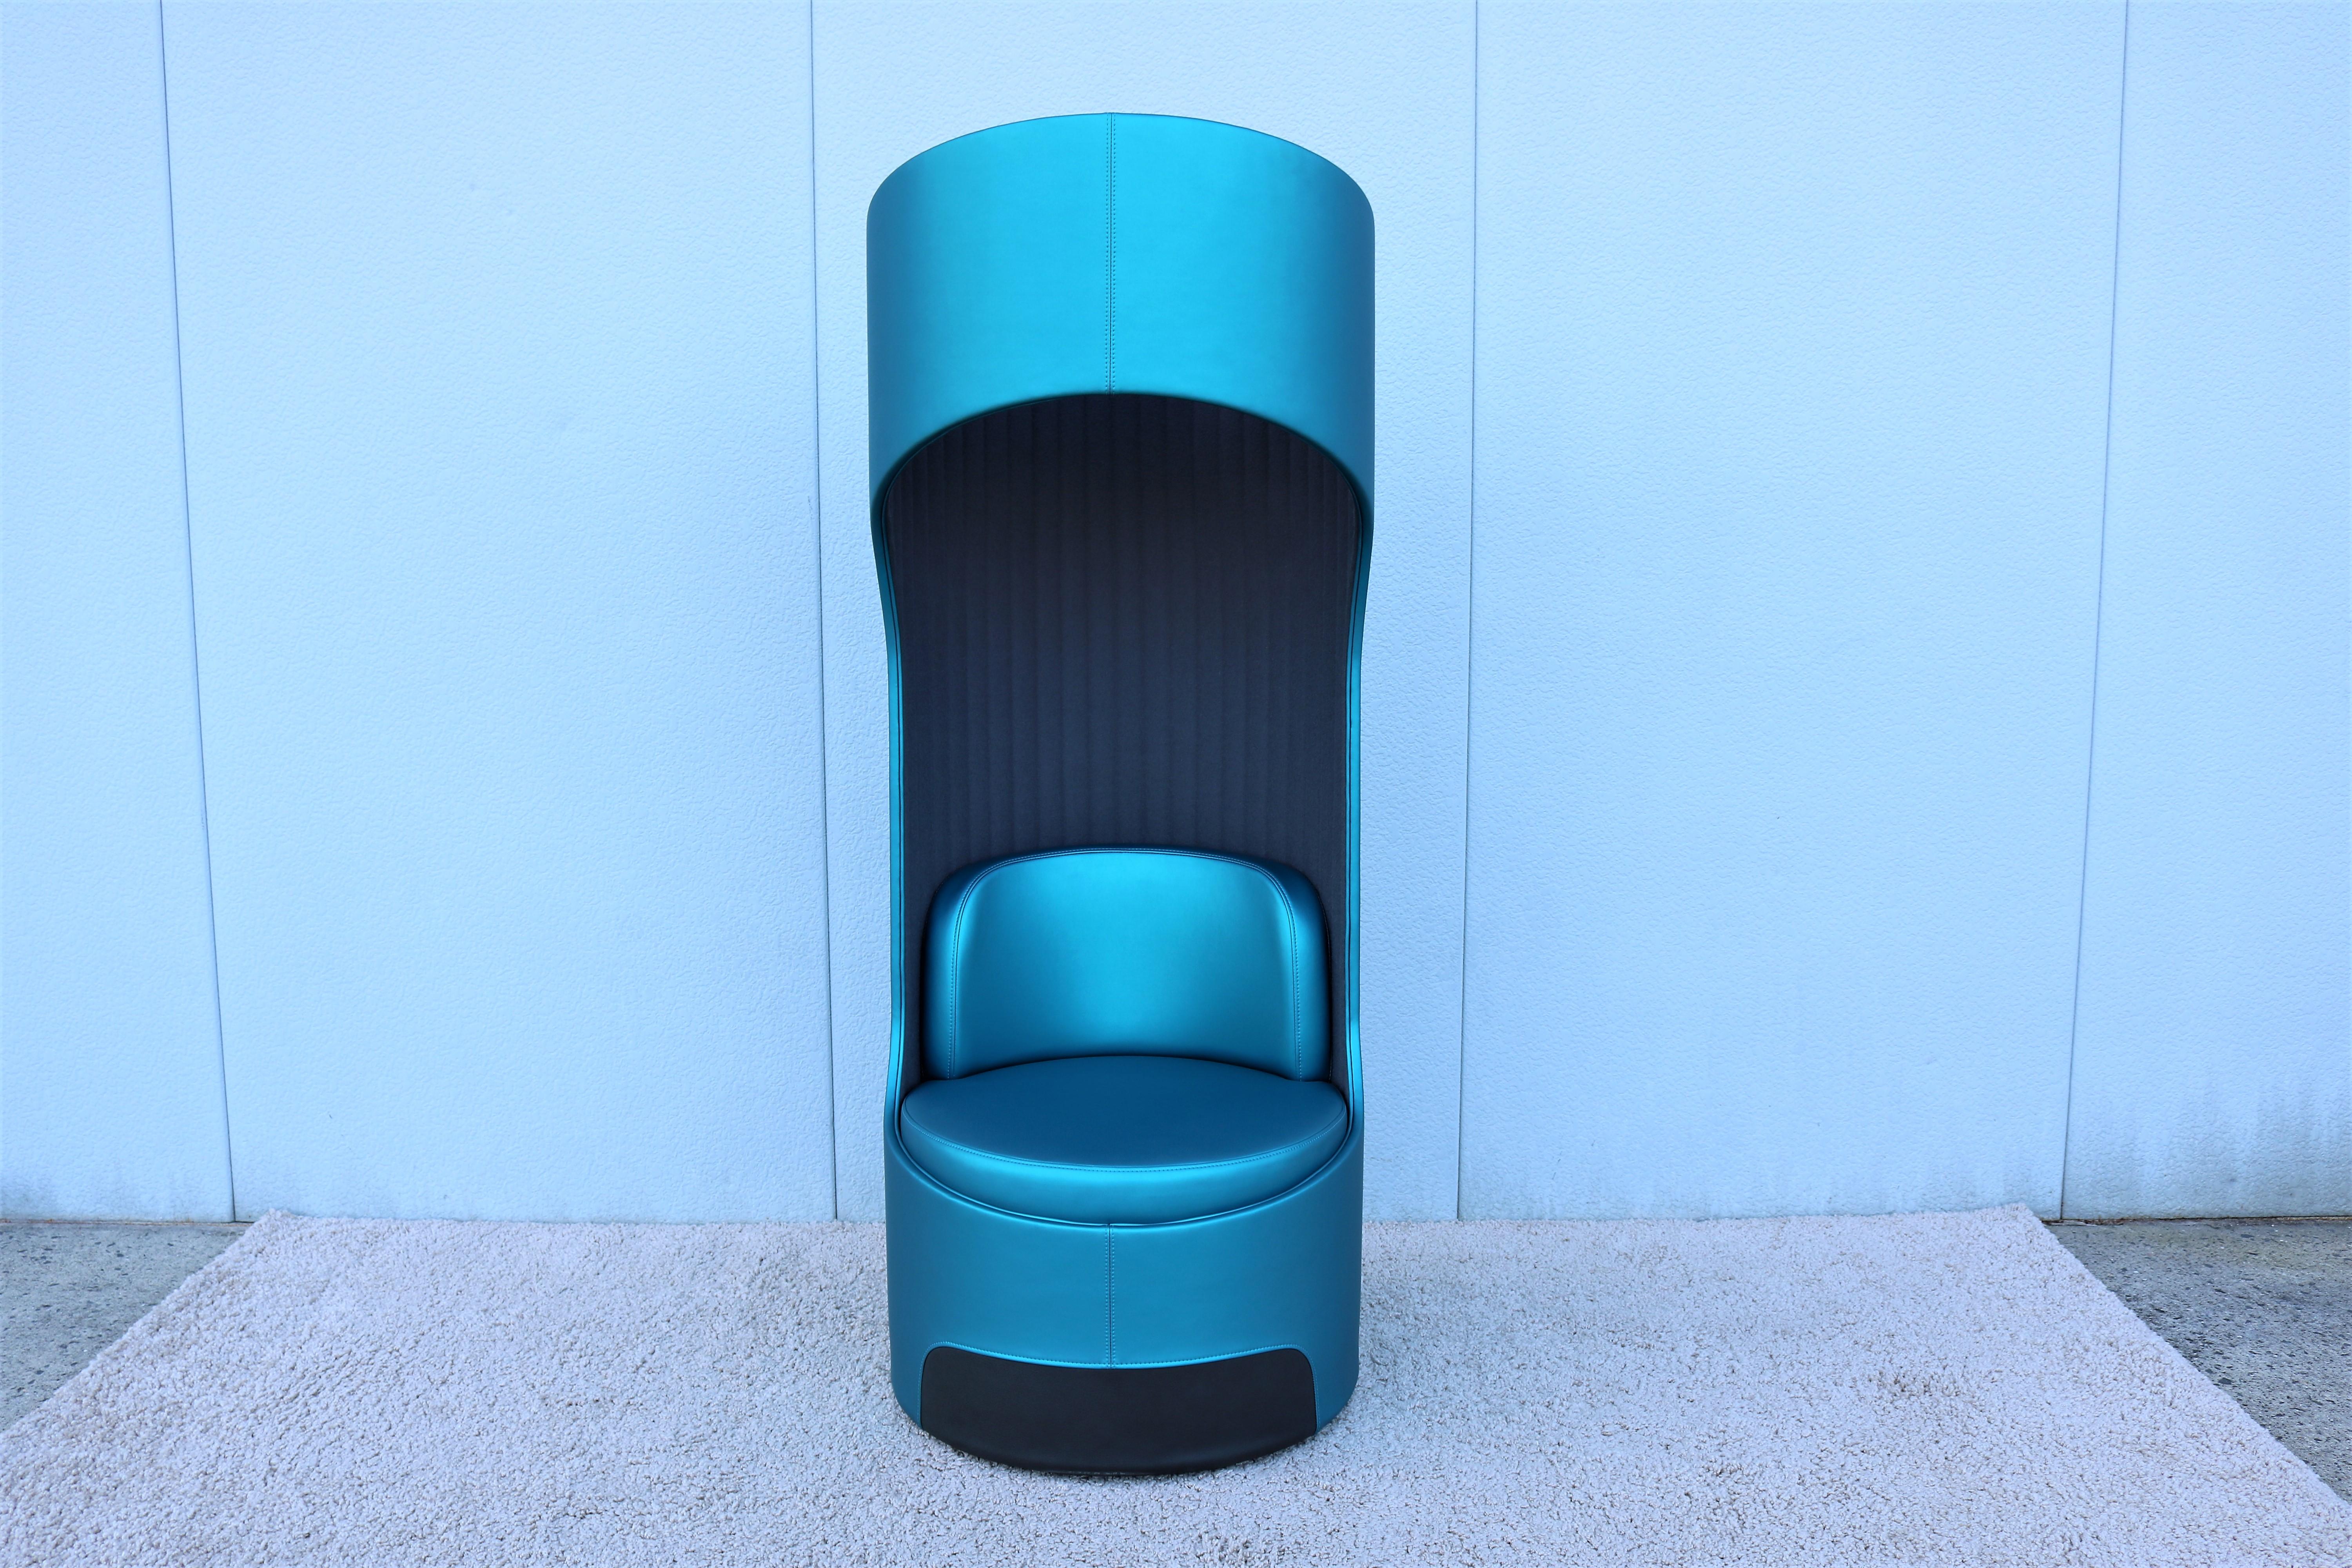 La chaise à dossier haut Cega de Boss Design a une forme tubulaire symétrique et présente des qualités acoustiques supérieures.
Sa conception unique a été développée intentionnellement pour réduire les bruits extérieurs et la vision